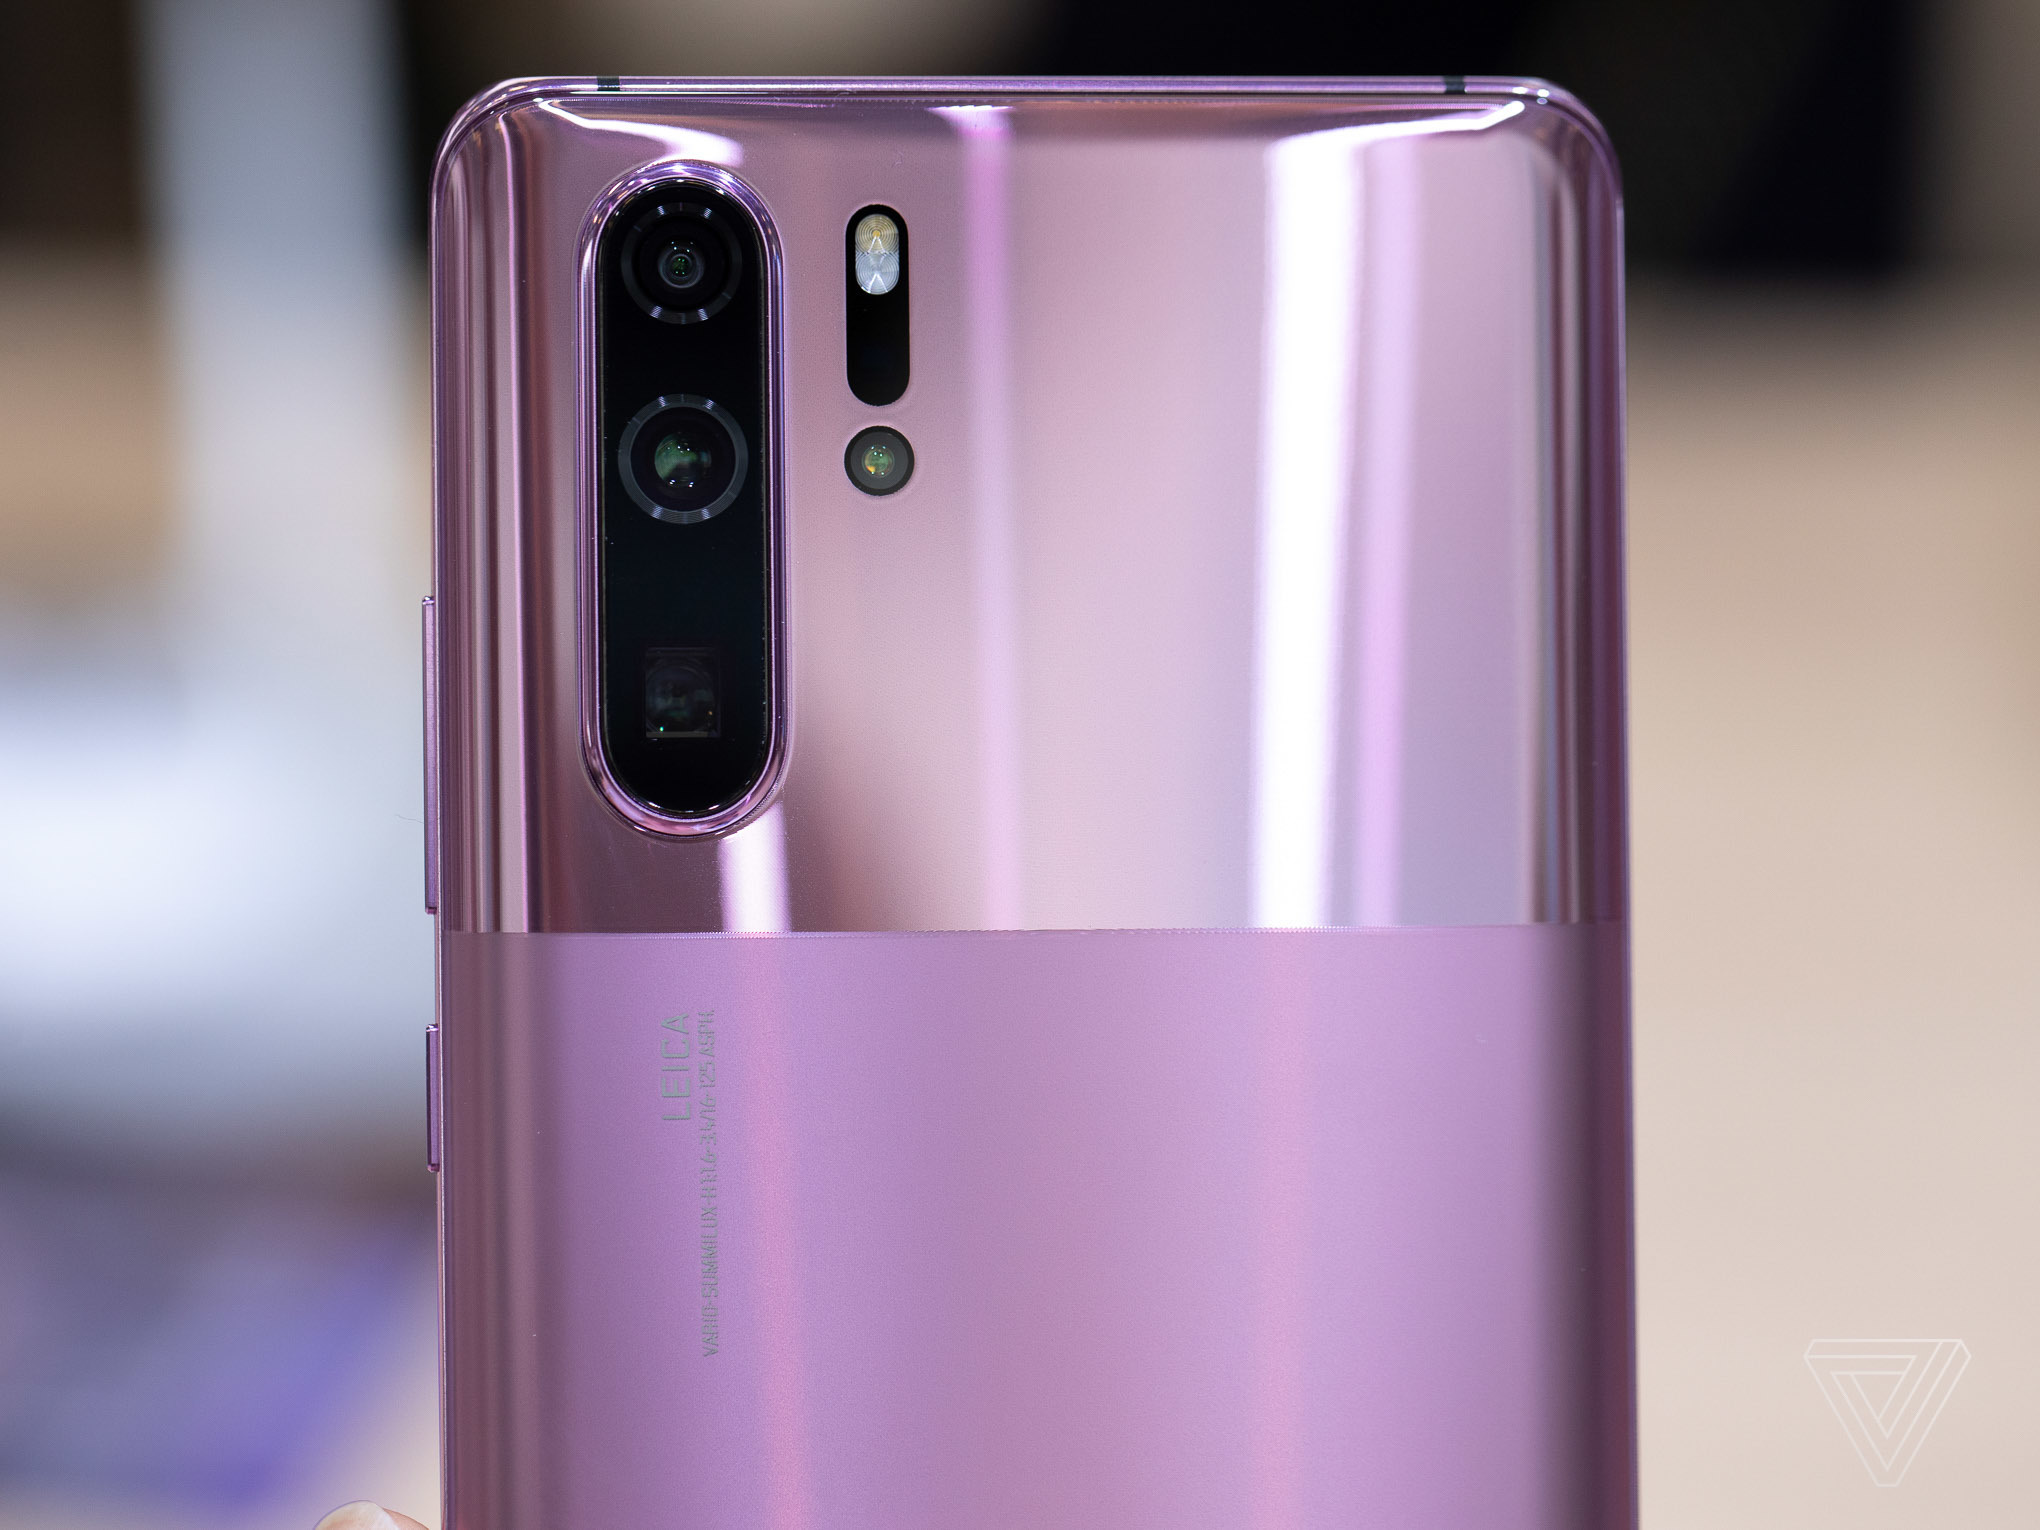 Huawei 'lách luật' với phiên bản P30 Pro mặt lưng nhám và bóng chạy Android 10